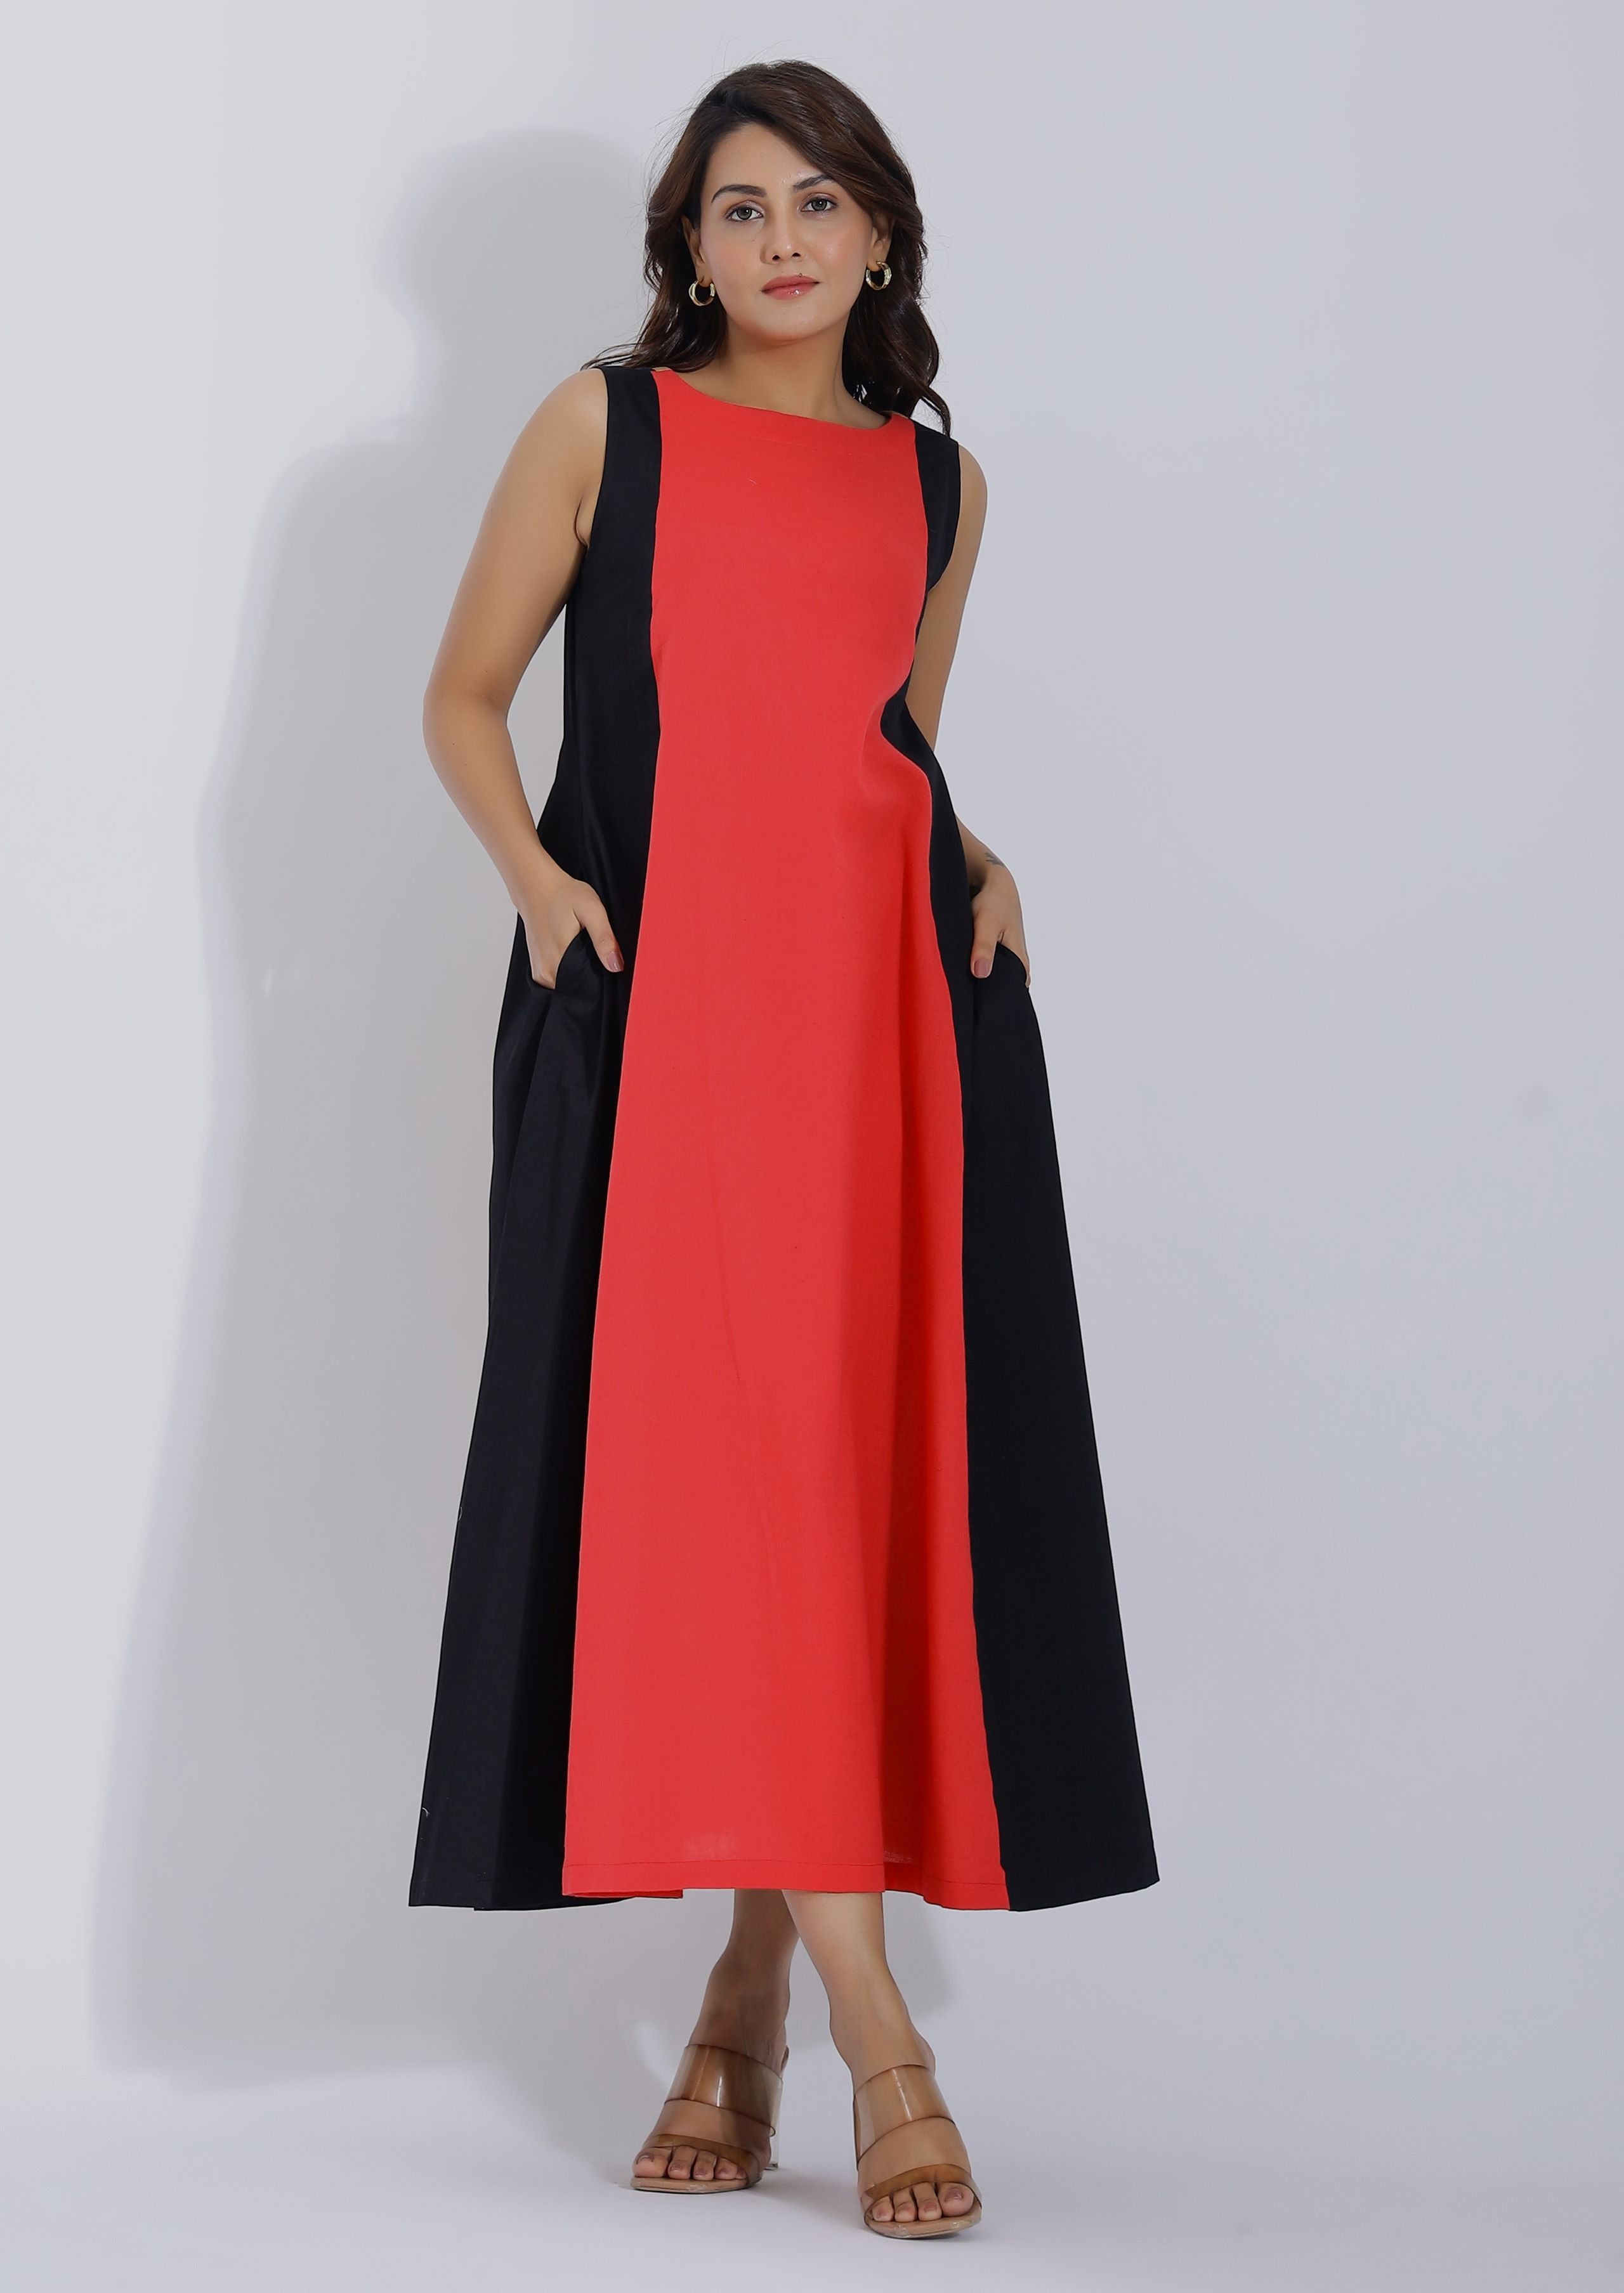 Lilac Color Block Dress - Selling Fast at Pantaloons.com